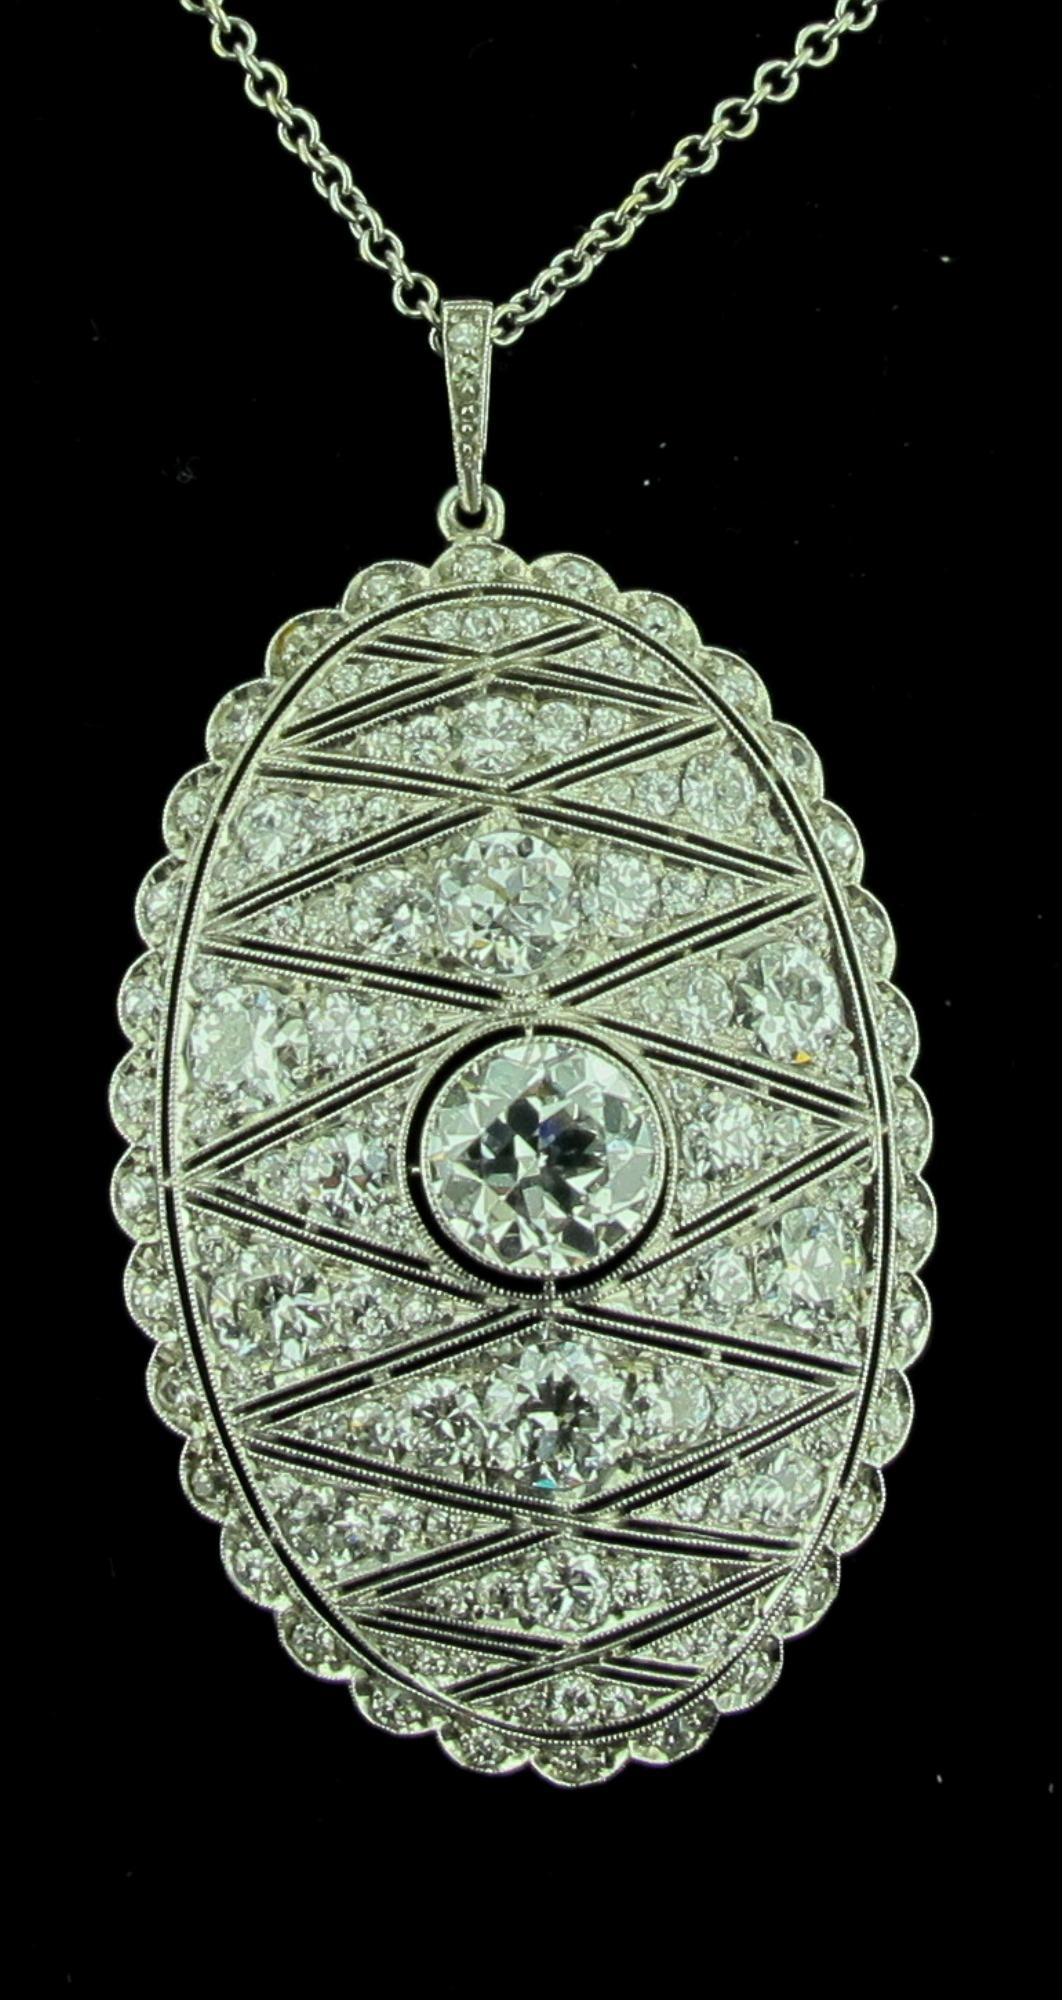 Aus der Zeit des Art déco, um 1925, stammt dieser in Platin gefasste Diamantanhänger.  Der zentrale Diamant wiegt 1,50 Karat.  Farbe ist H, Klarheit ist VS.  Der ovale Anhänger ist mit Diamanten im Rundschliff mit einem Gesamtgewicht von 3,75 Karat